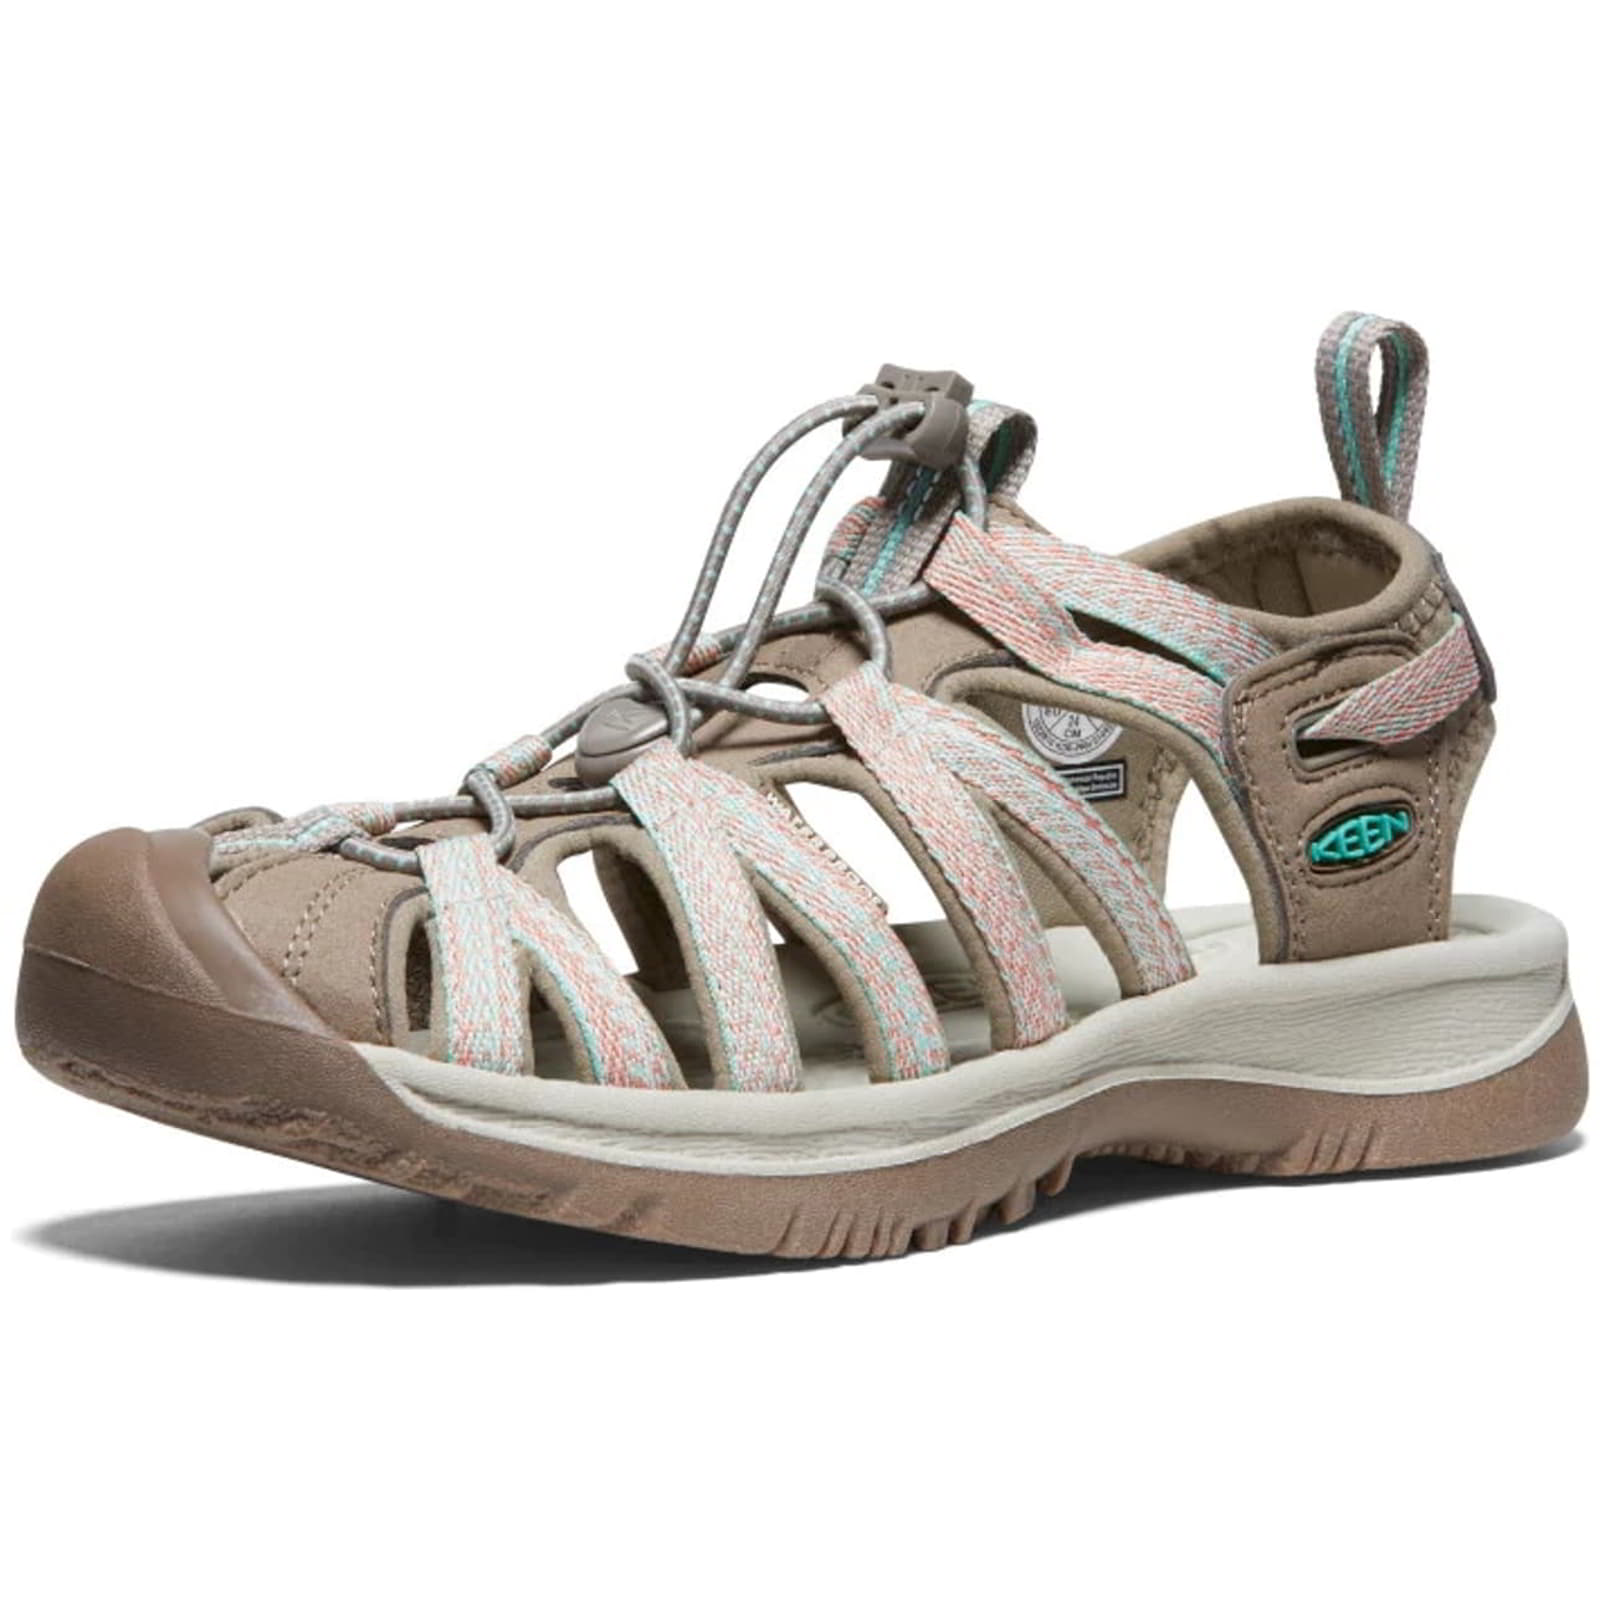 Keen Whisper Women's Waterproof Walking Hiking Sandals - UK 7.5 / 40.5 / US 10